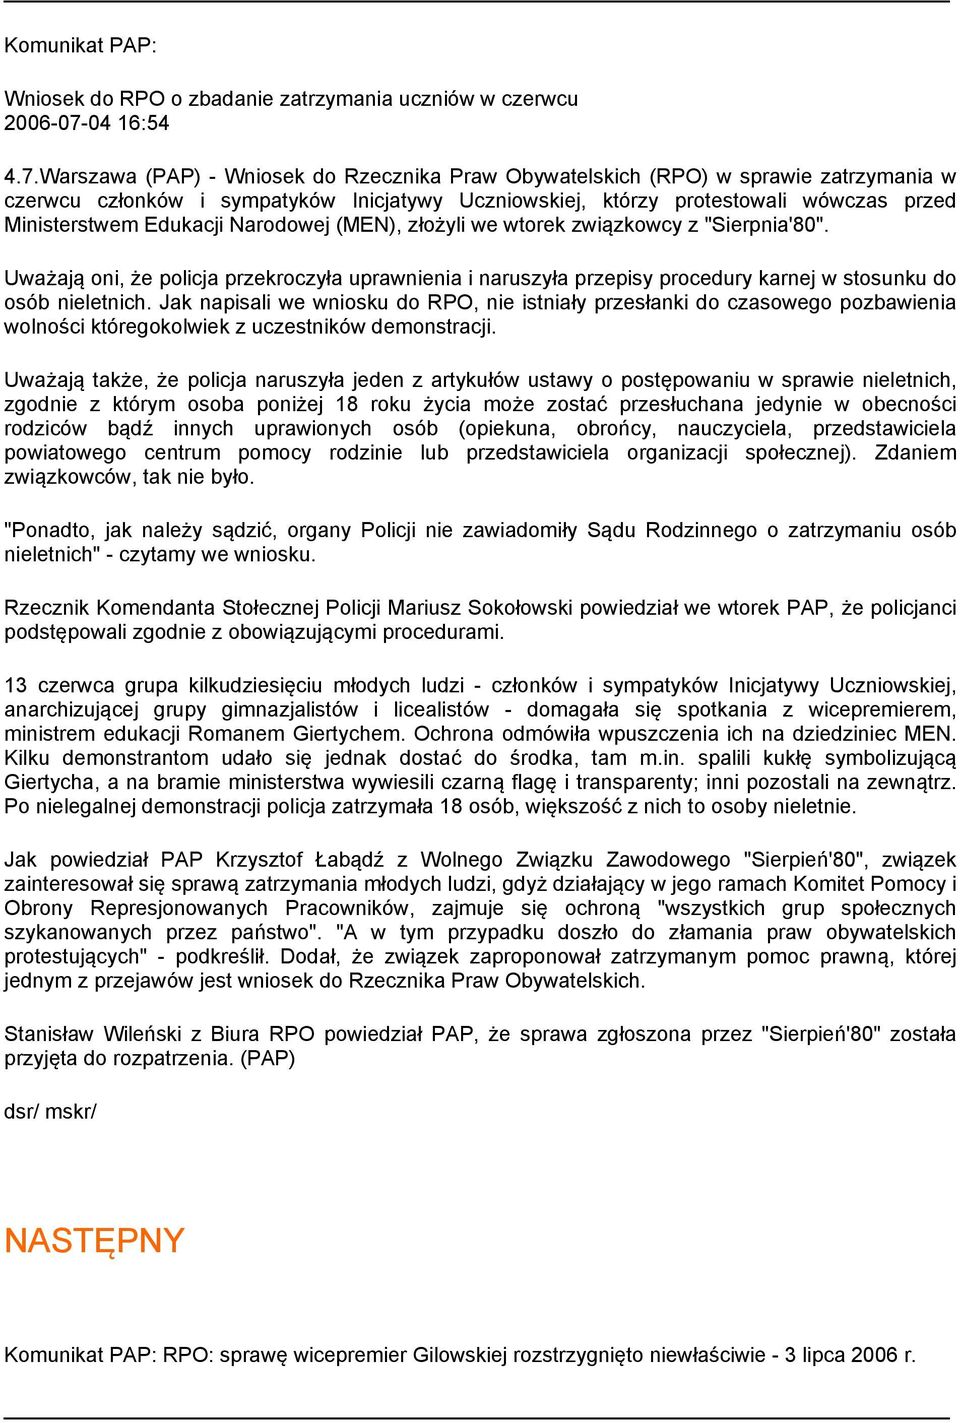 Warszawa (PAP) - Wniosek do Rzecznika Praw Obywatelskich (RPO) w sprawie zatrzymania w czerwcu członków i sympatyków Inicjatywy Uczniowskiej, którzy protestowali wówczas przed Ministerstwem Edukacji